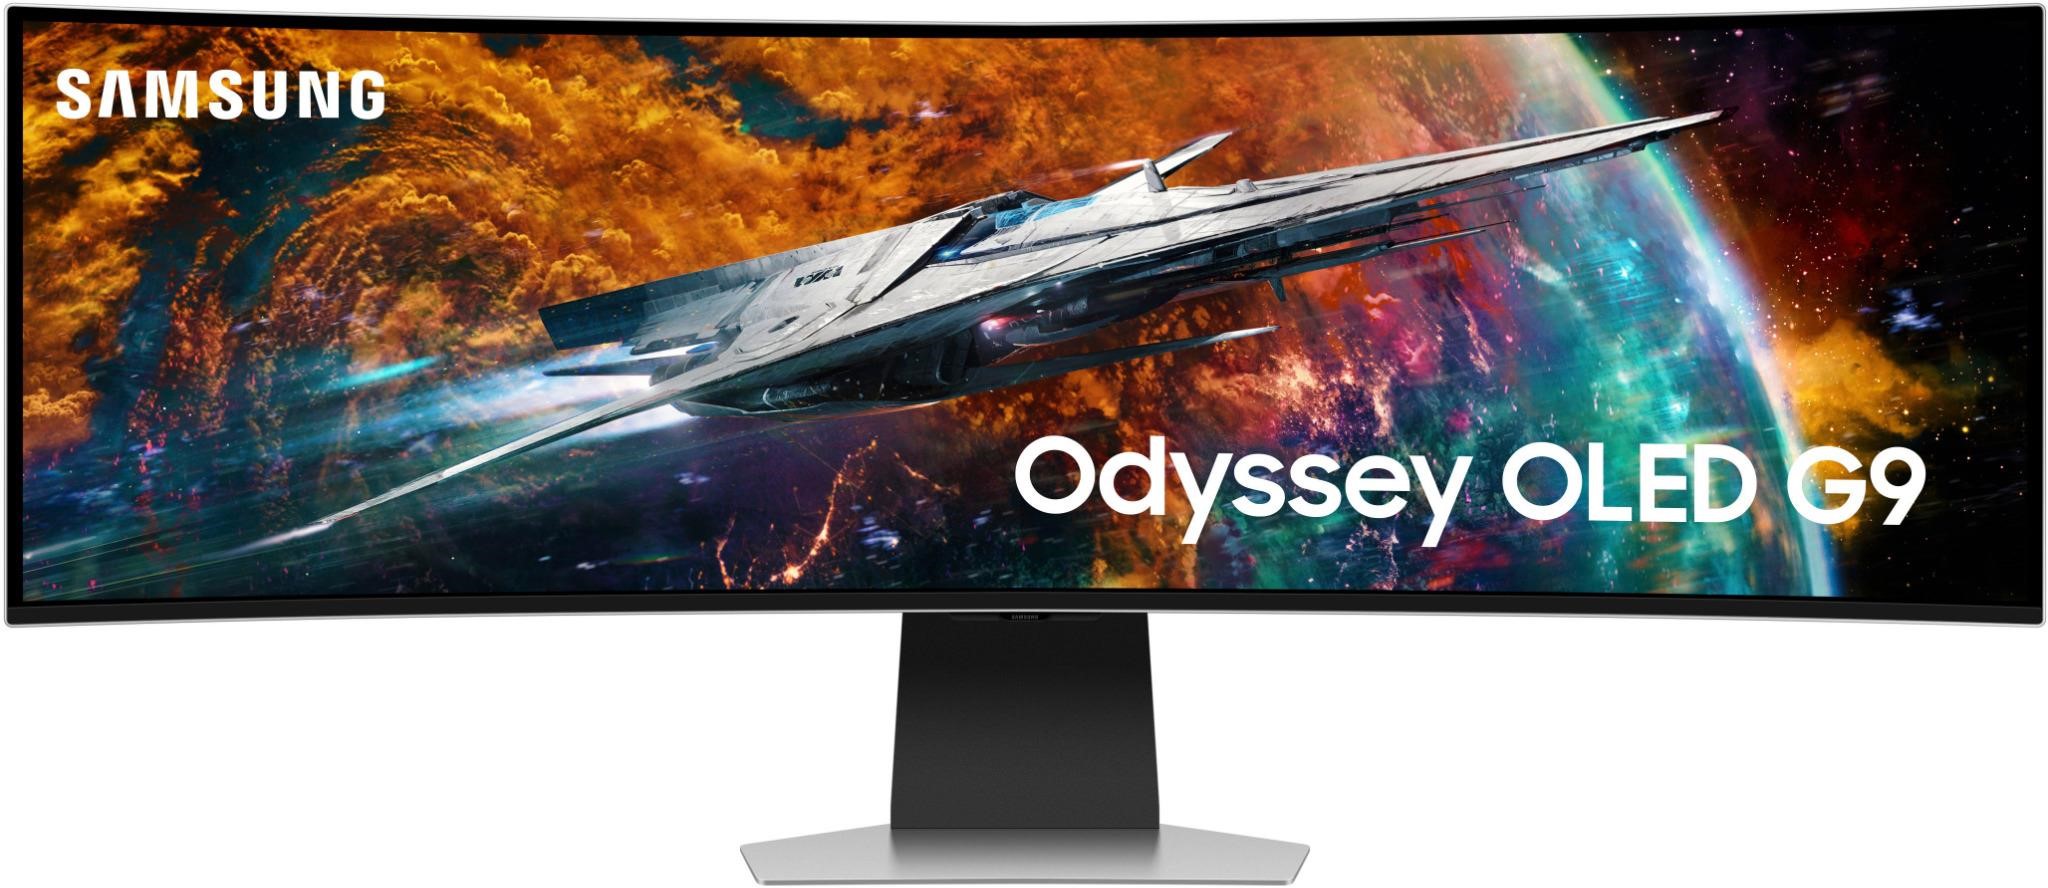 Samsung 49 Odyssey OLED G9 240Hz Monitor